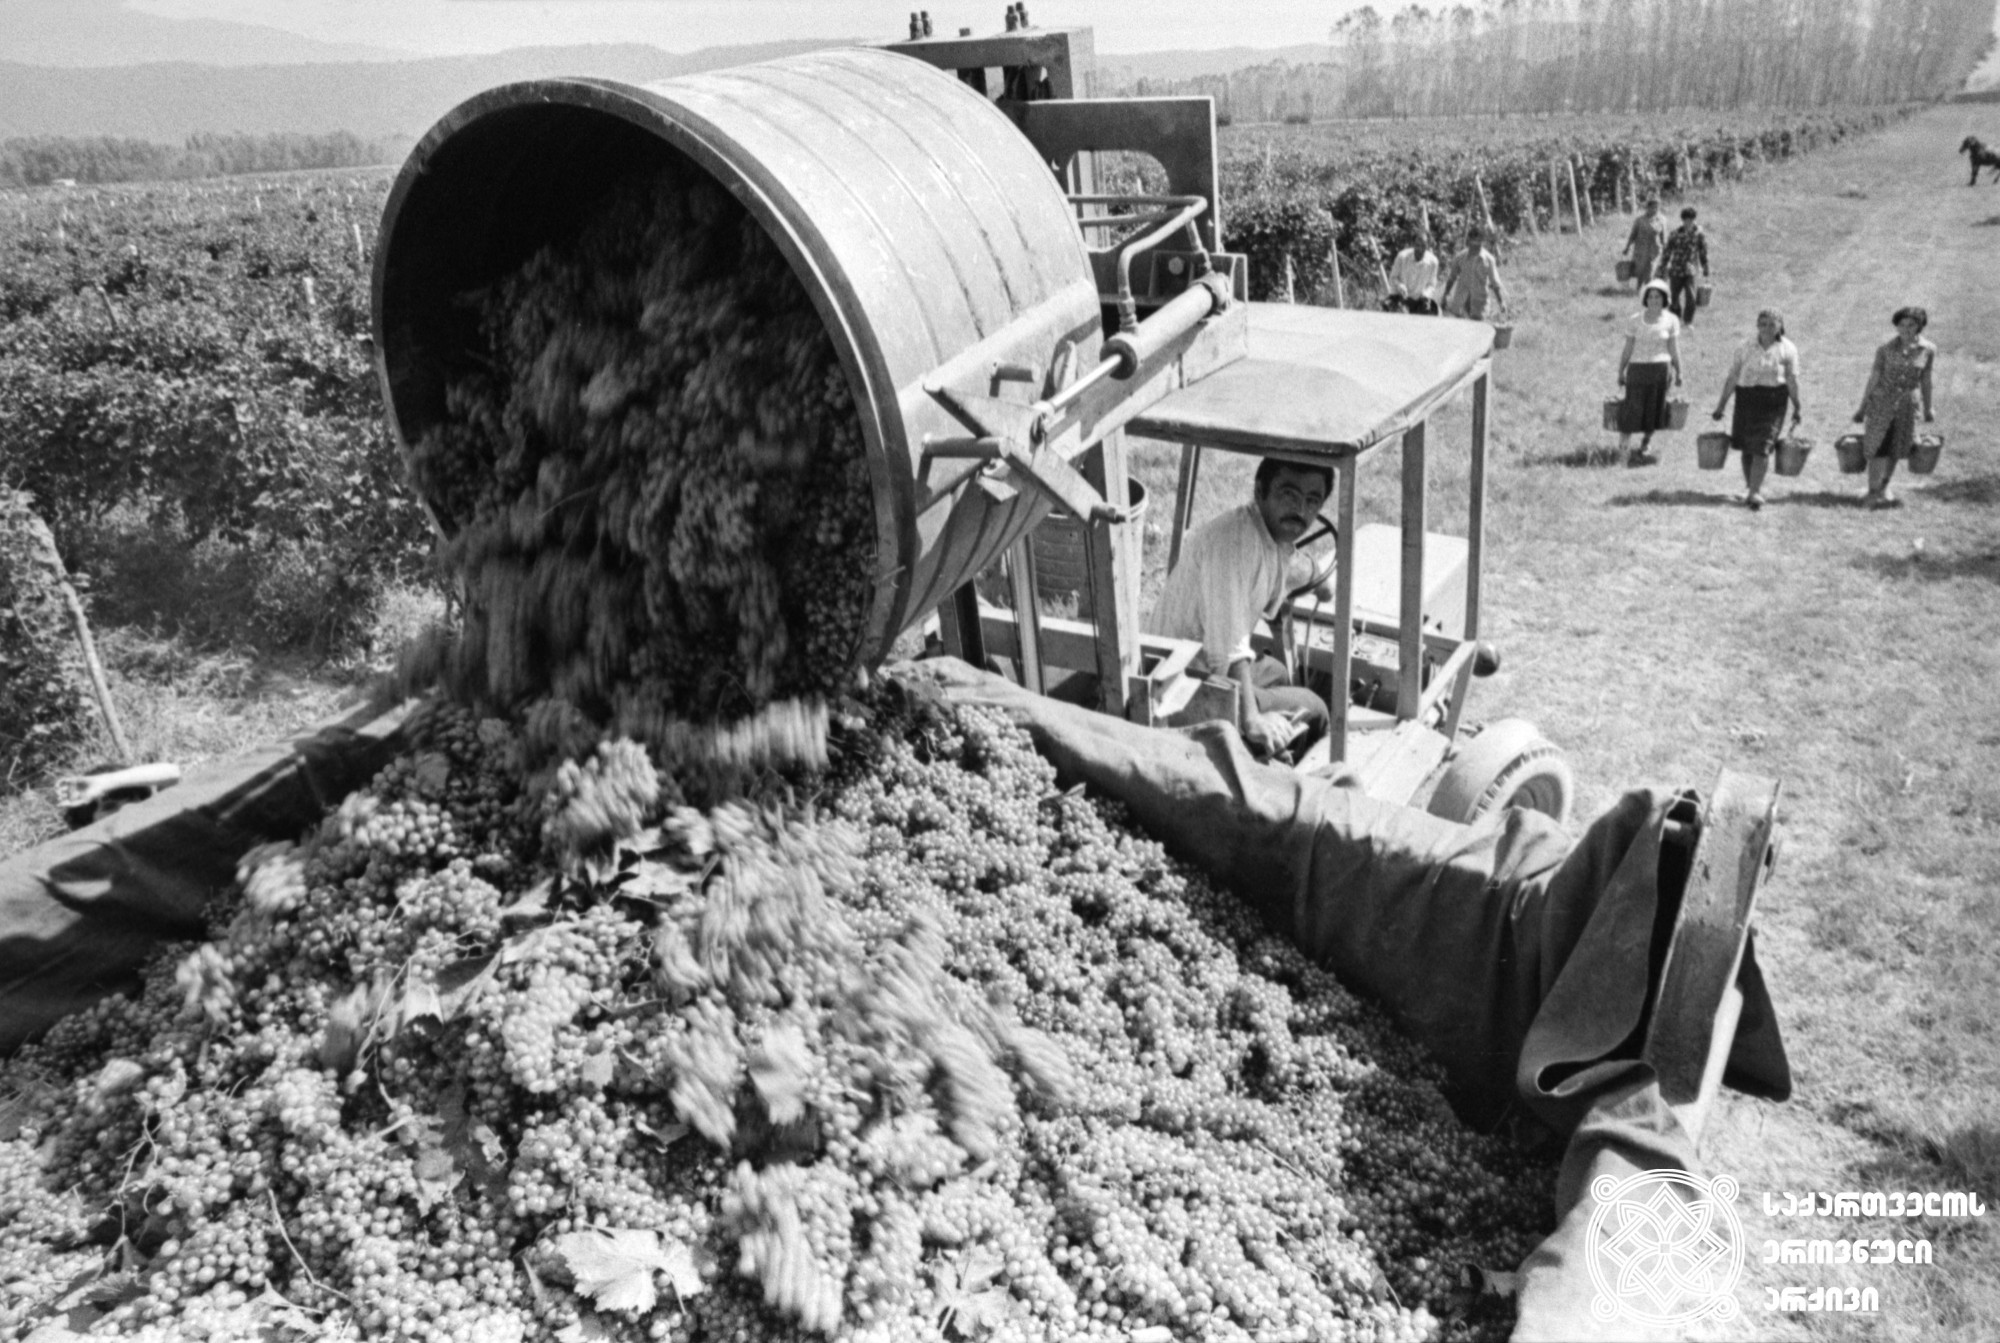 ყურძნის მექანიზებული ჩატვირთვა<br> 
ფოტო: ვიქტორ მორგუნოვი <br> 
სოფელი მთისძირი, 1980 წელი <br> 
Mechanized loading of grapes <br>
Photo by P. Odikadze
Village Mtisdziri, 1980 <br>